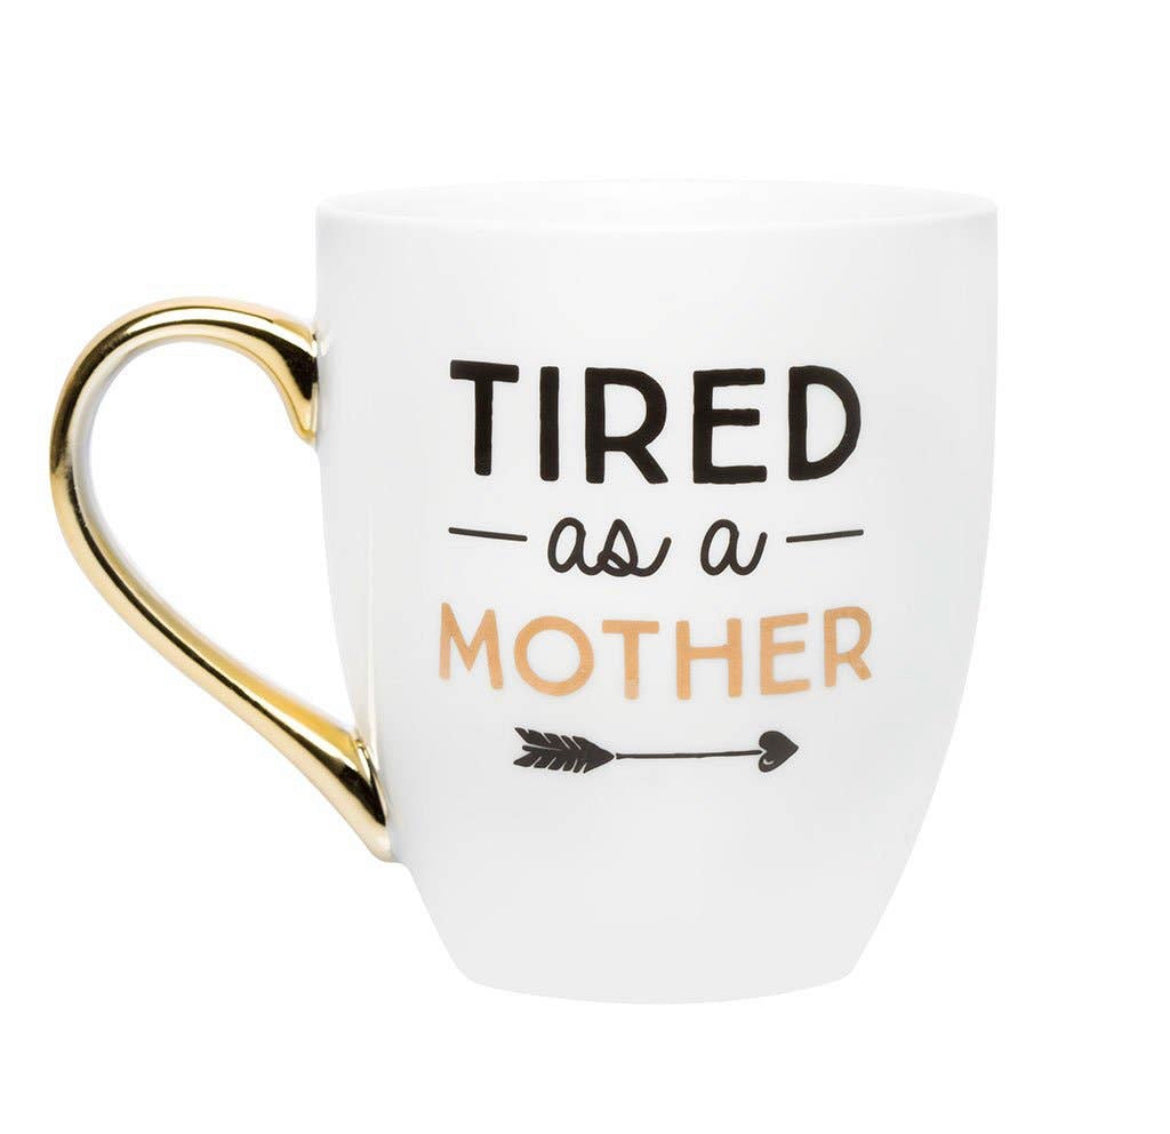 Tired like a mother mug